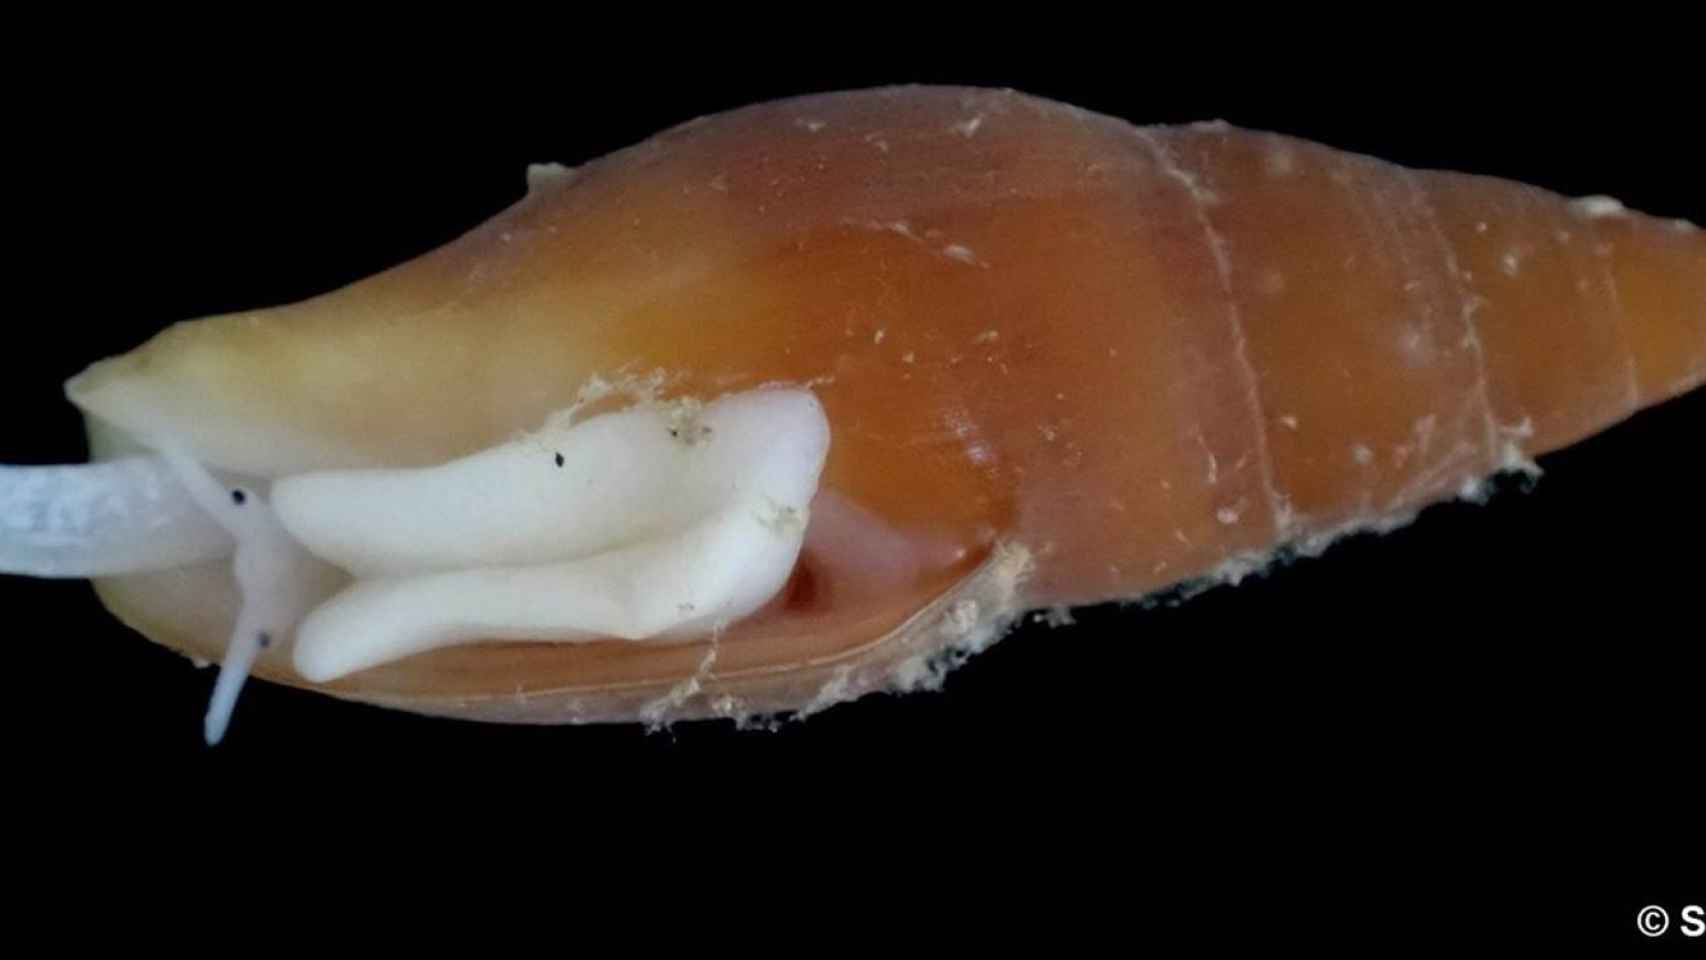 'Epistocomitra angelesae': así es la especie de molusco recién descubierta frente a la costa andaluza